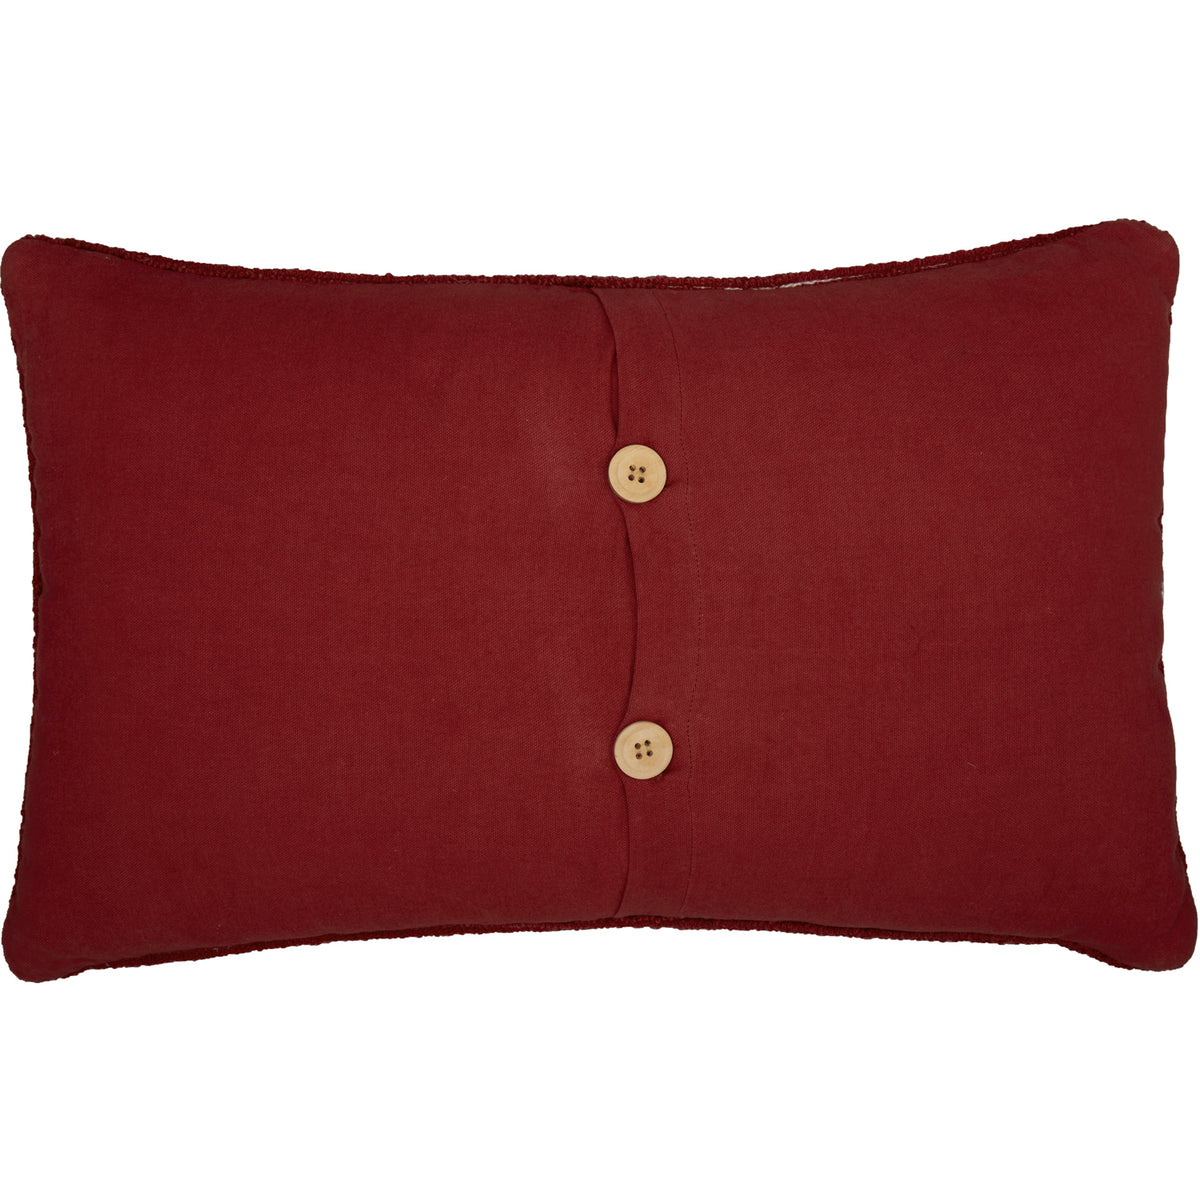 Oak & Asher Wyatt Bear Hooked Pillow 14x22 By VHC Brands